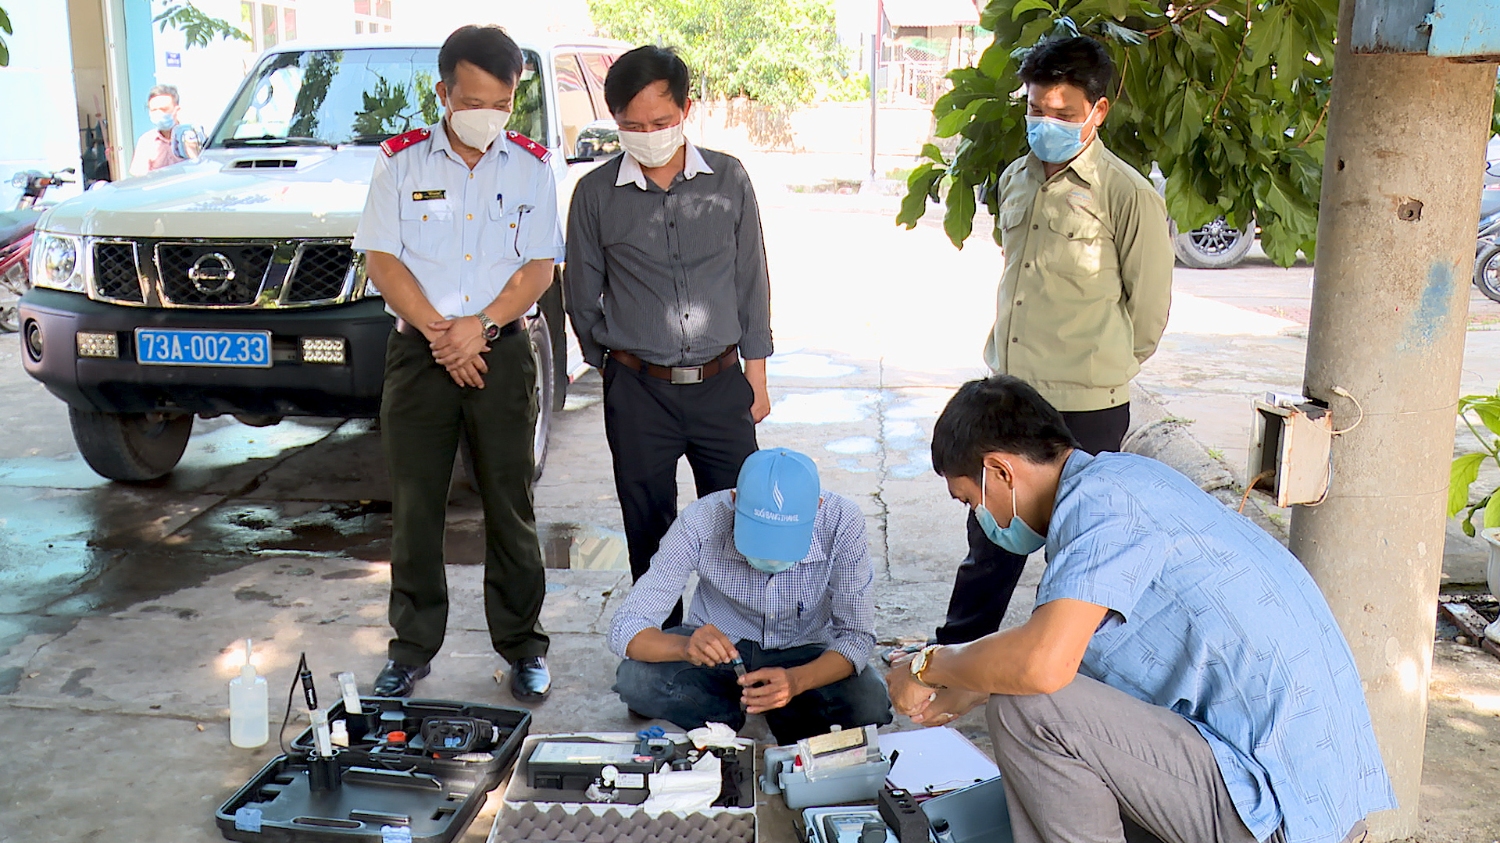 Trung tâm Phòng chống bệnh tật tỉnh Quảng Bình đã tiến hành tổ chức lấy mẫu nước để xét nghiệm, kiểm tra chất lượng nước sạch tại Chi nhánh cấp nước Ba Đồn